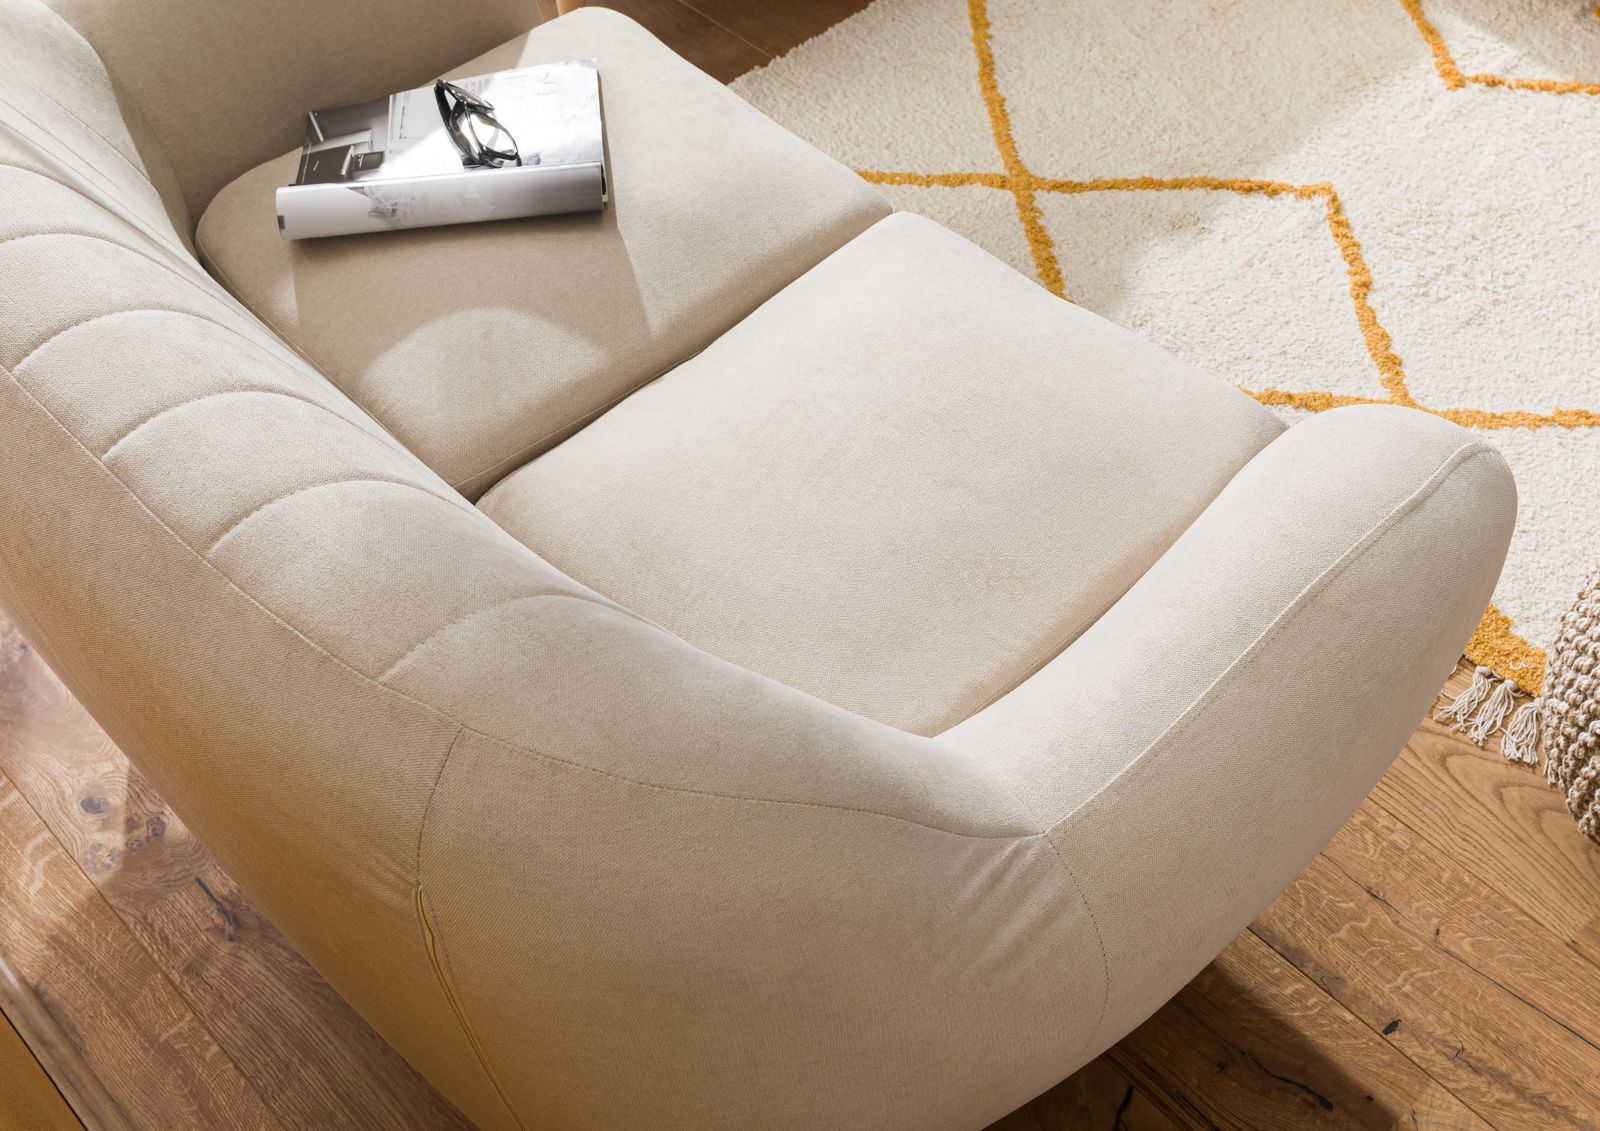 2-Sitz-Sofa-Bett, Komfort und Stil, Gestell: Metall, Stoff: Polyester, Größe: 133x78x78cm, Umwandelbar in ein Bett, Creme Retro - Emob